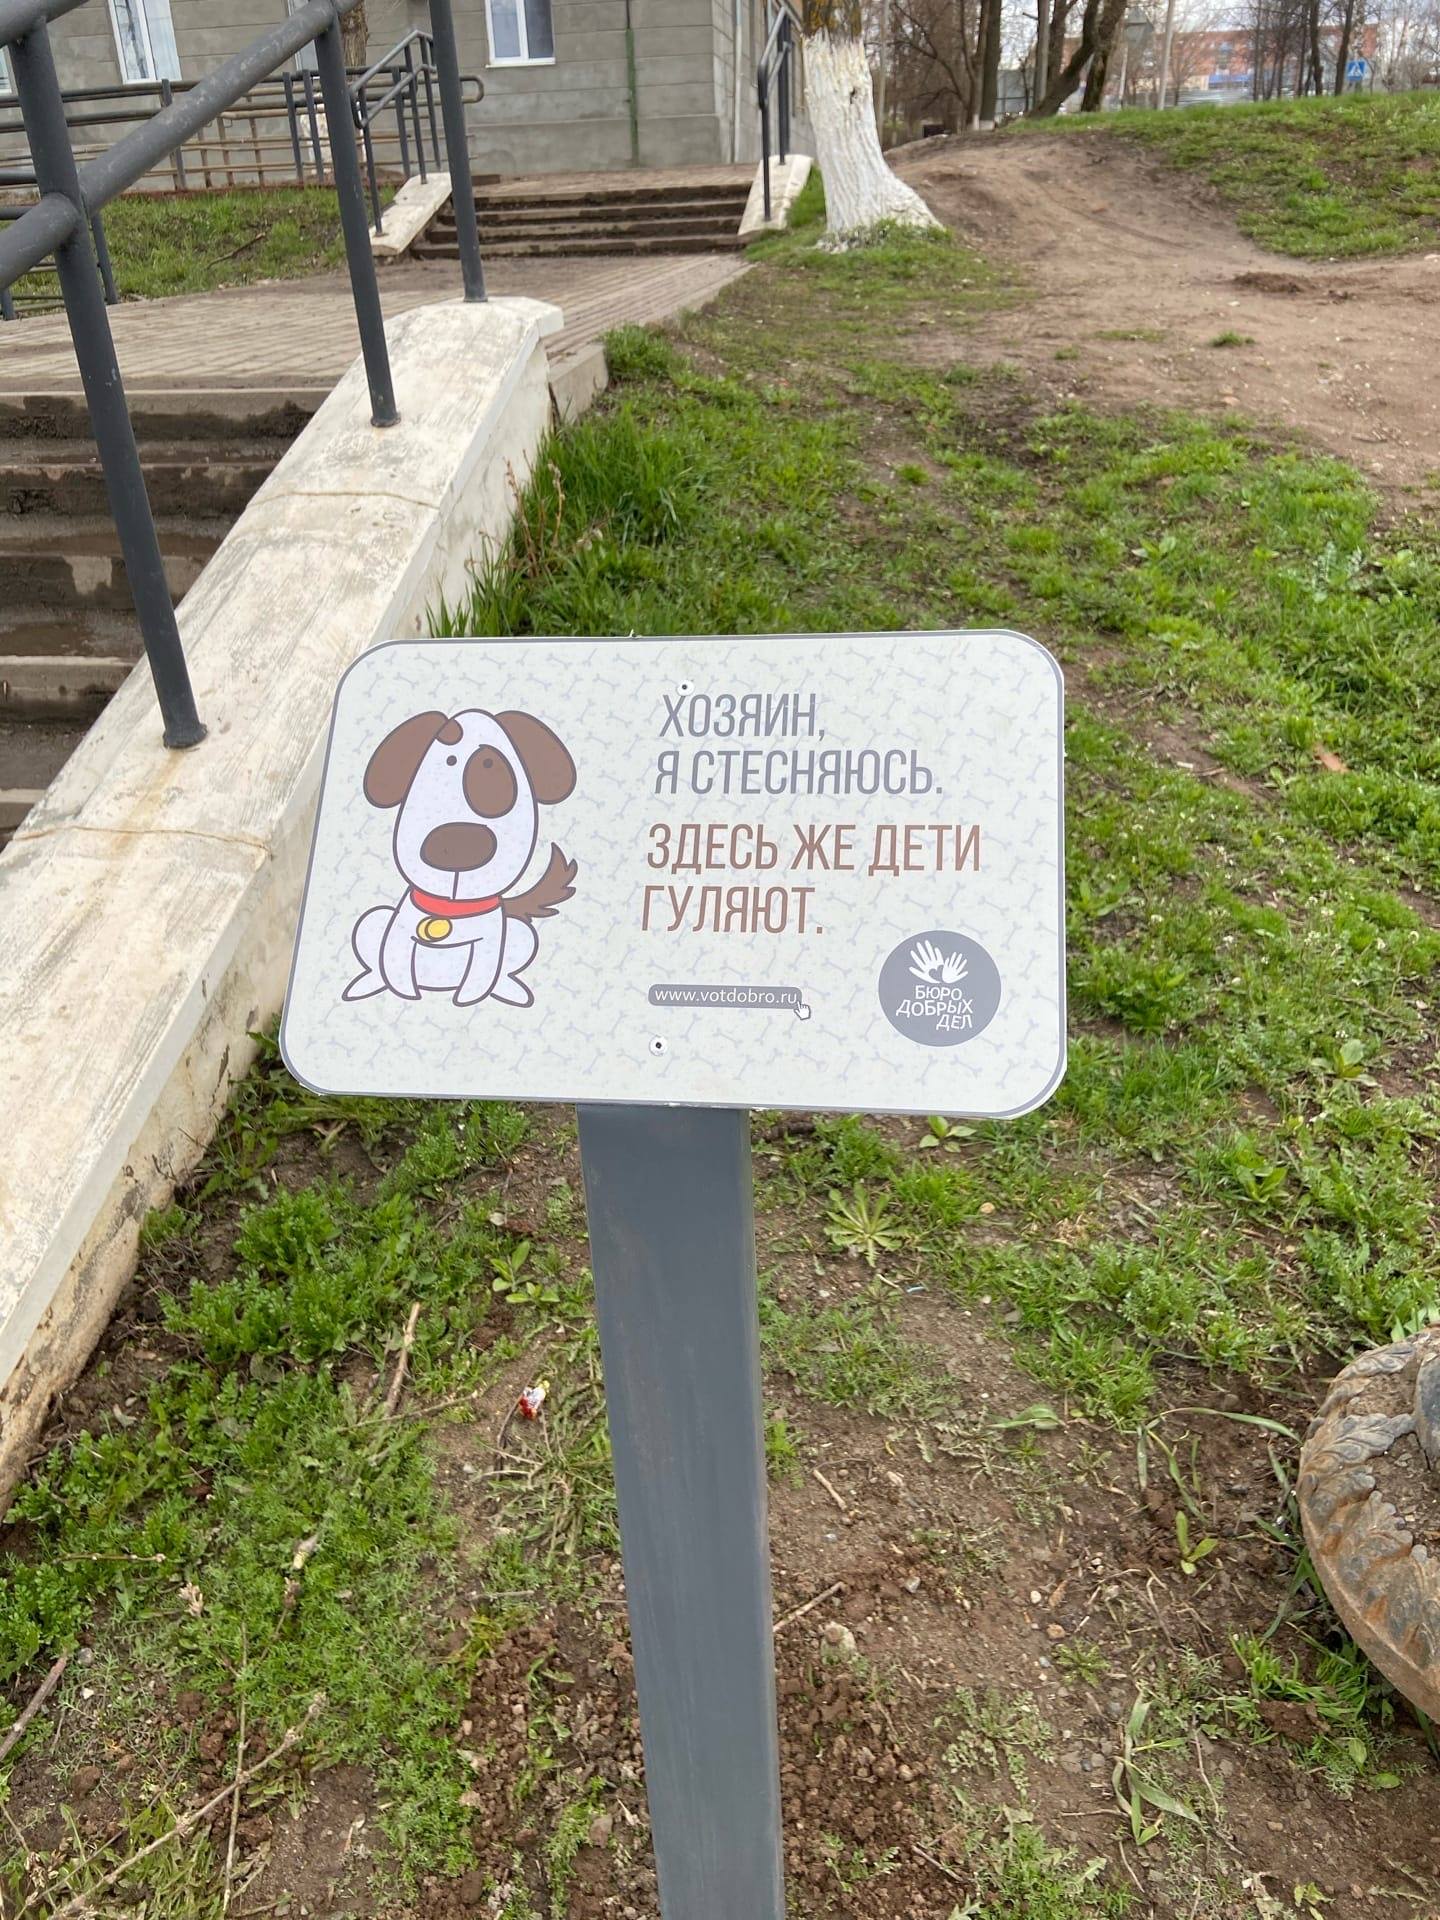 Оригинальные таблички появились в местах выгула собак в Воткинске